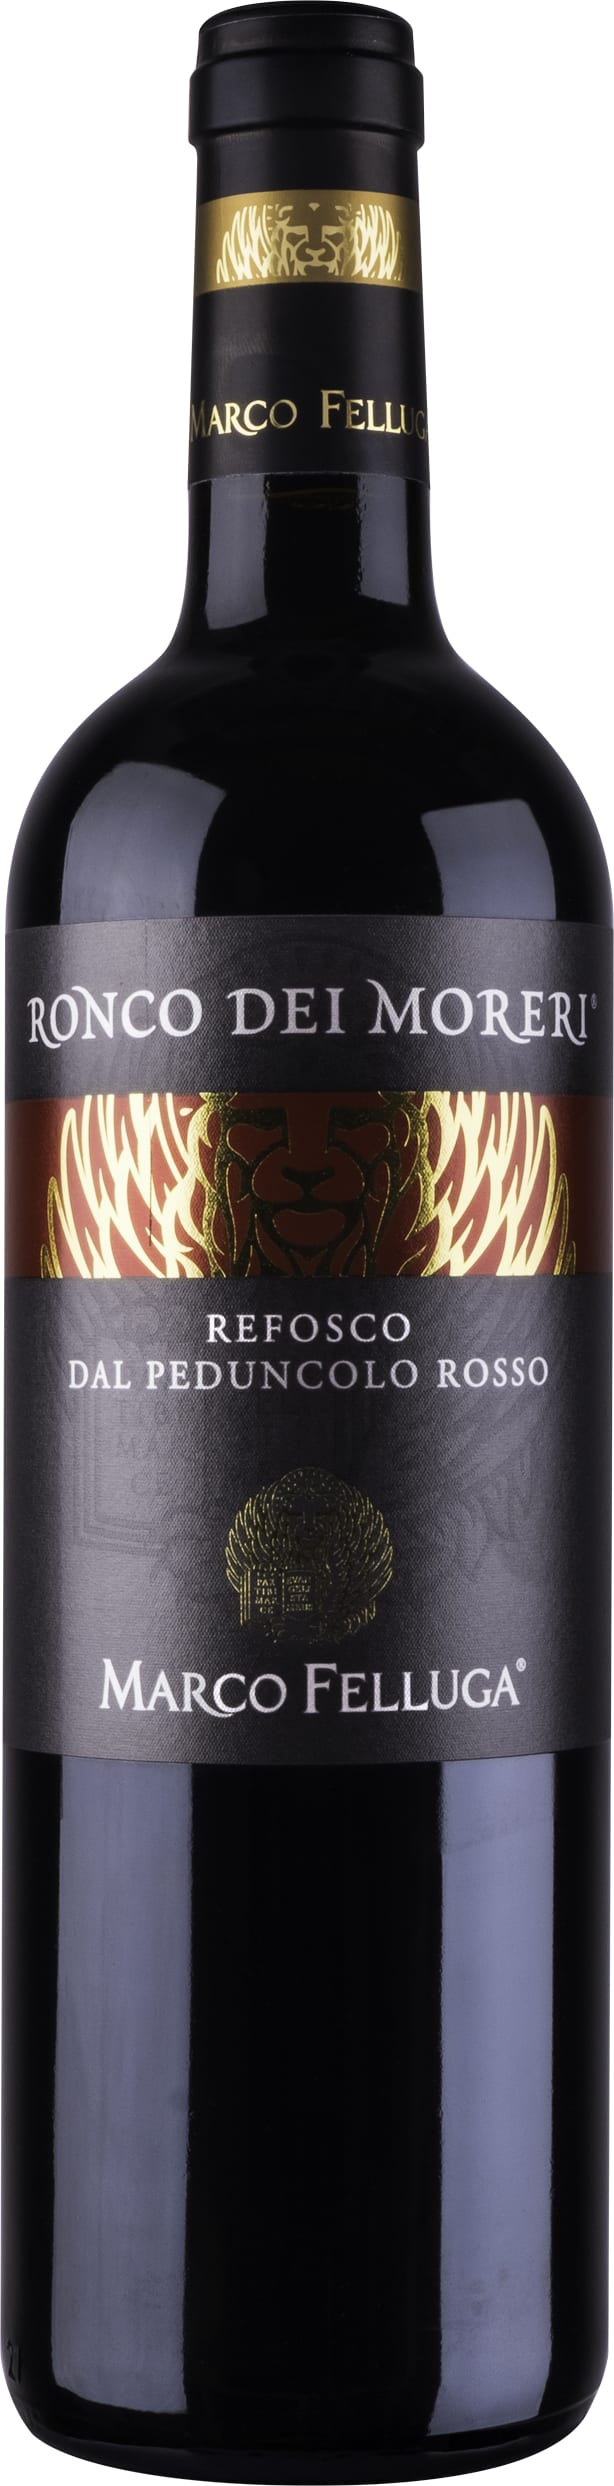 Marco Felluga Refosco dal Peduncolo Rosso Ronco dei Moreri 2018 75cl - Buy Marco Felluga Wines from GREAT WINES DIRECT wine shop